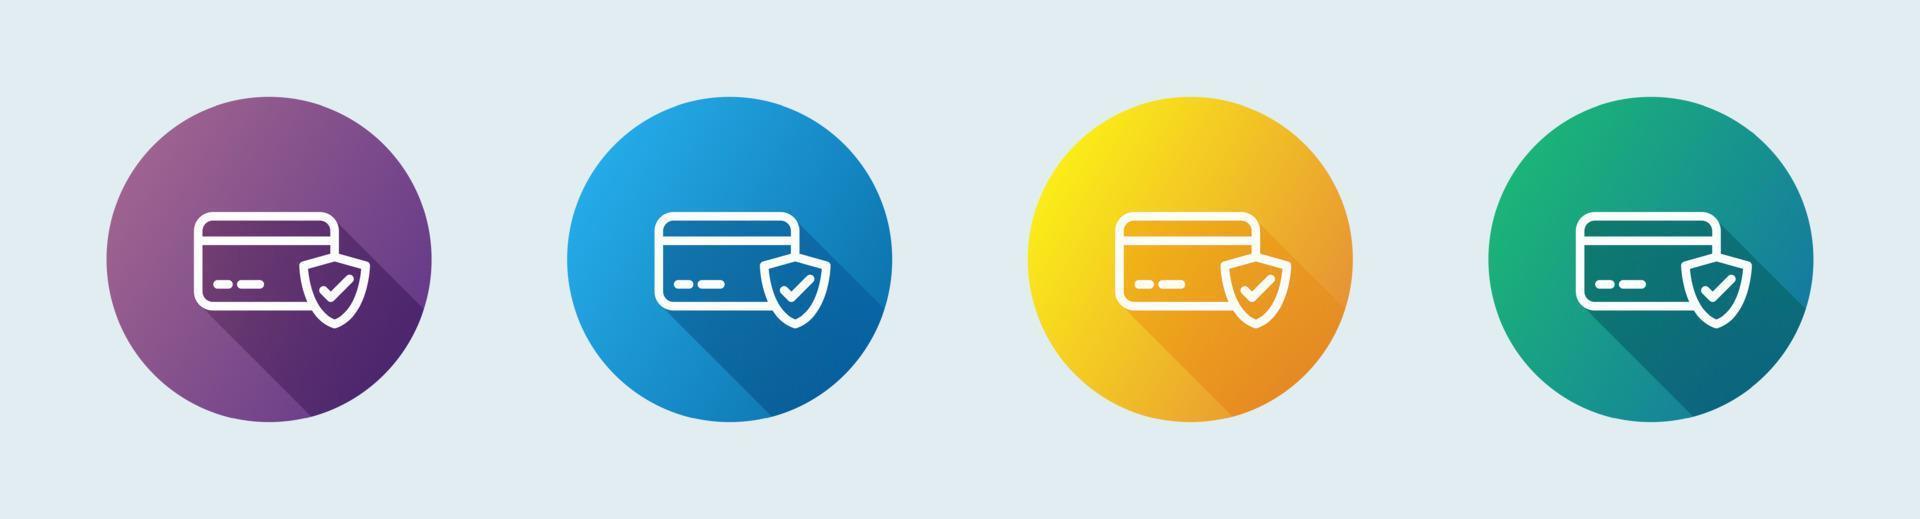 icono de línea de pago hecho en estilo de diseño plano. ilustración de vector de signos de tarjeta de crédito.